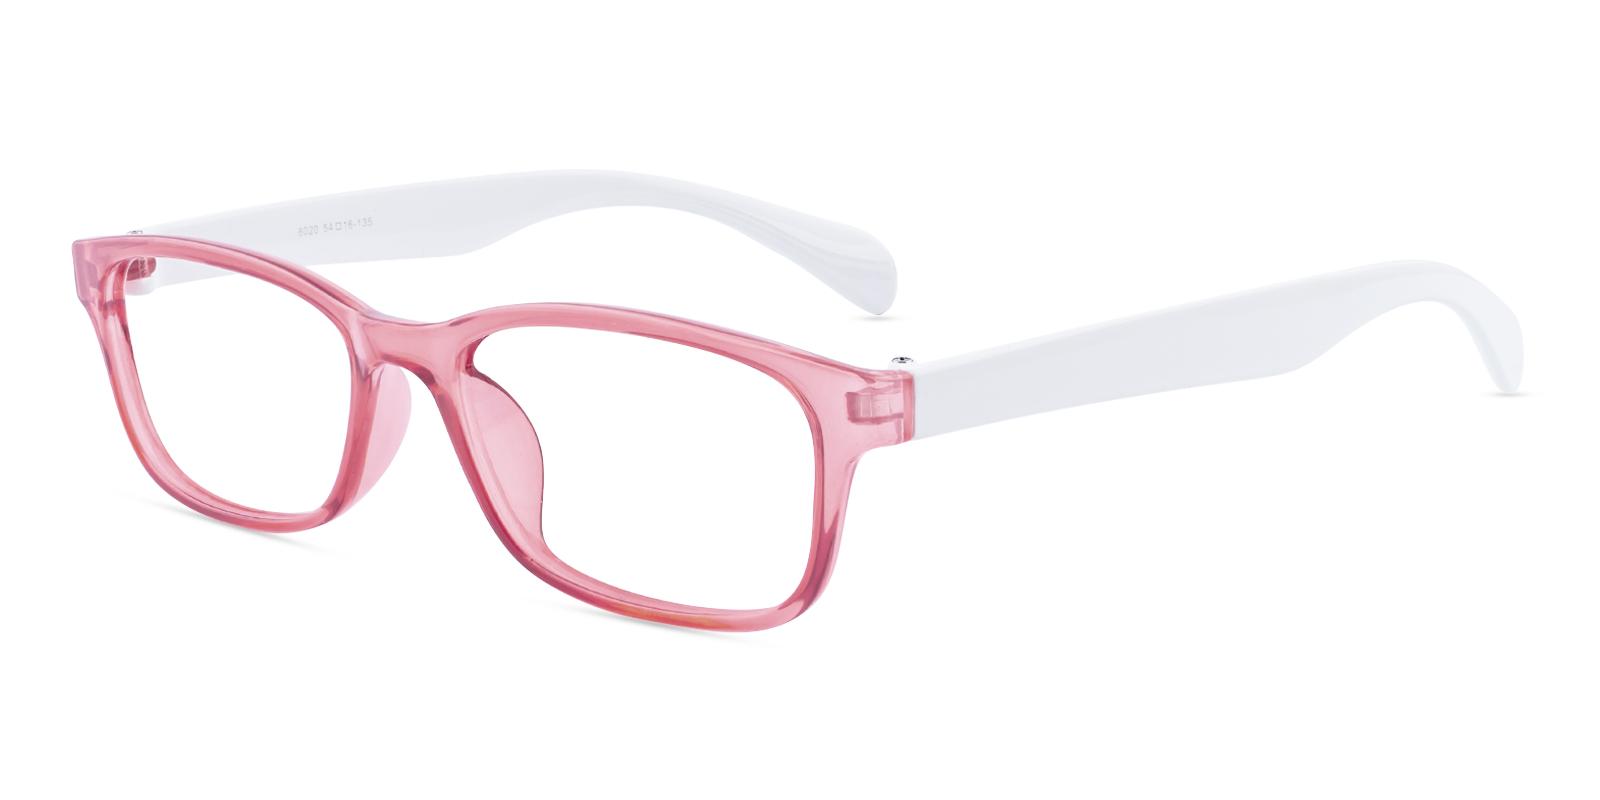 Liney Red TR Eyeglasses , UniversalBridgeFit Frames from ABBE Glasses